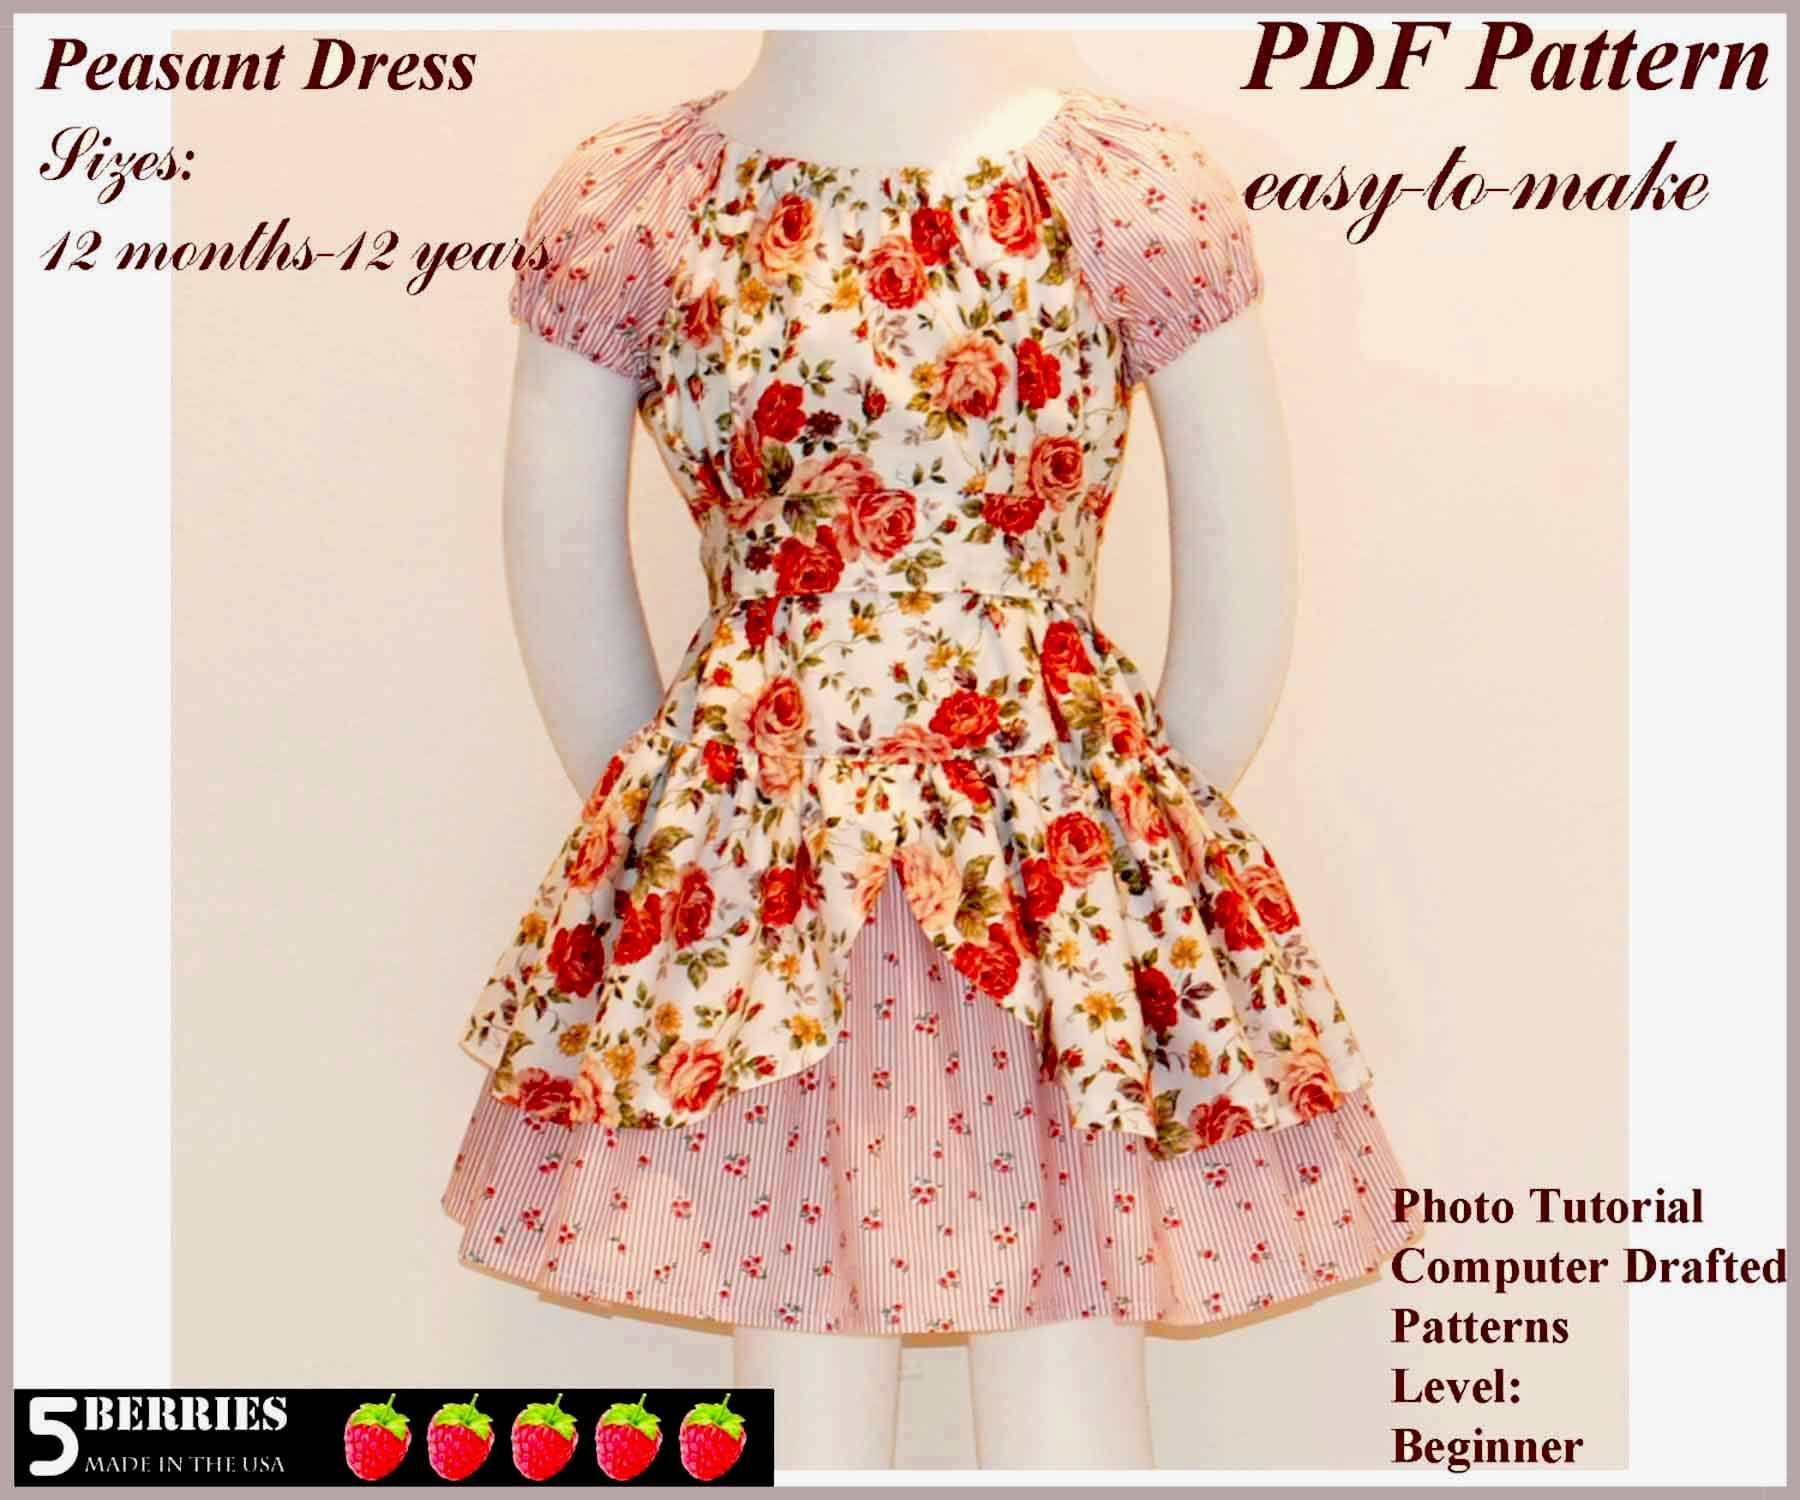 Free Printable Sewing Patterns | Alexandra Girls Dress Sewing - Free Printable Sewing Patterns For Kids